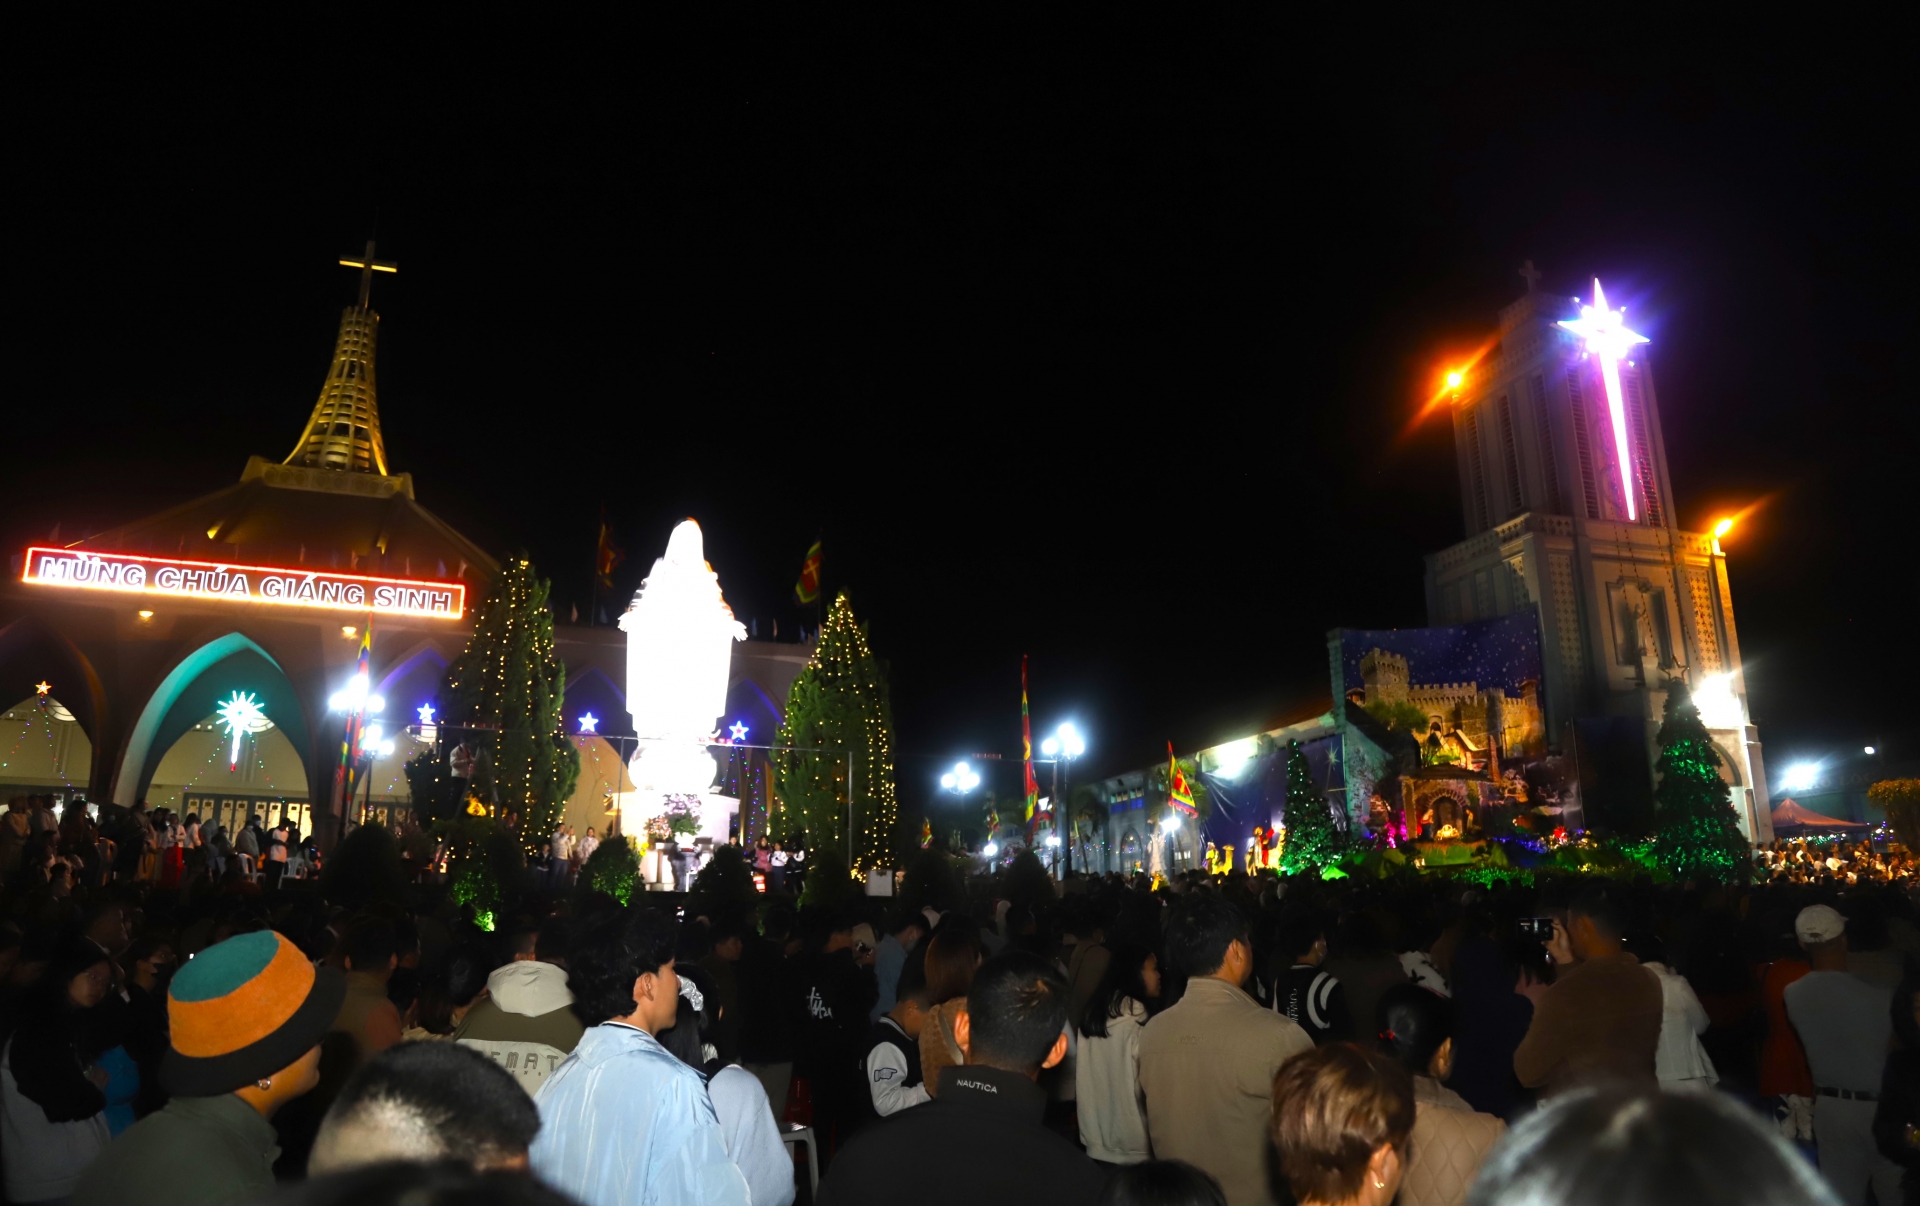 Hàng ngàn người dân cùng tế tựu đổ về nhà thờ Giáo xứ Bảo Lộc trong đêm Noel cùng đón Giáng sinh